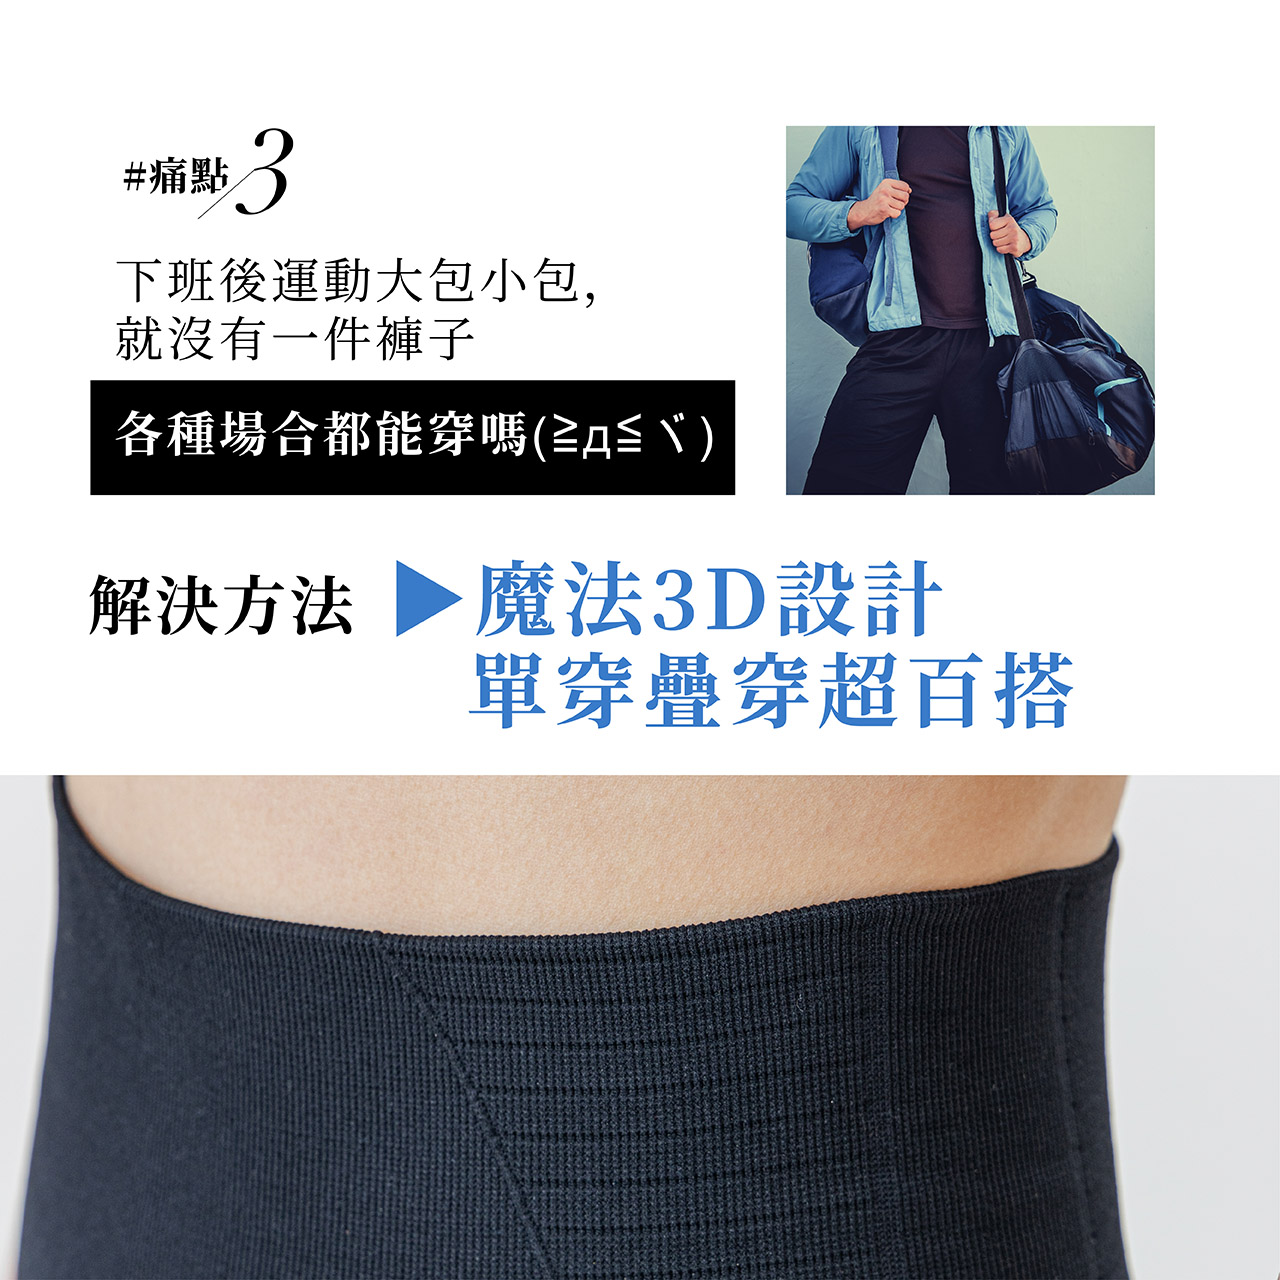 痛點3:下班後運動大包小包，就沒有一件褲子各種場合都能穿嗎?→AFC石墨烯塑身魔法褲，魔法3D設計，單穿疊穿超百搭